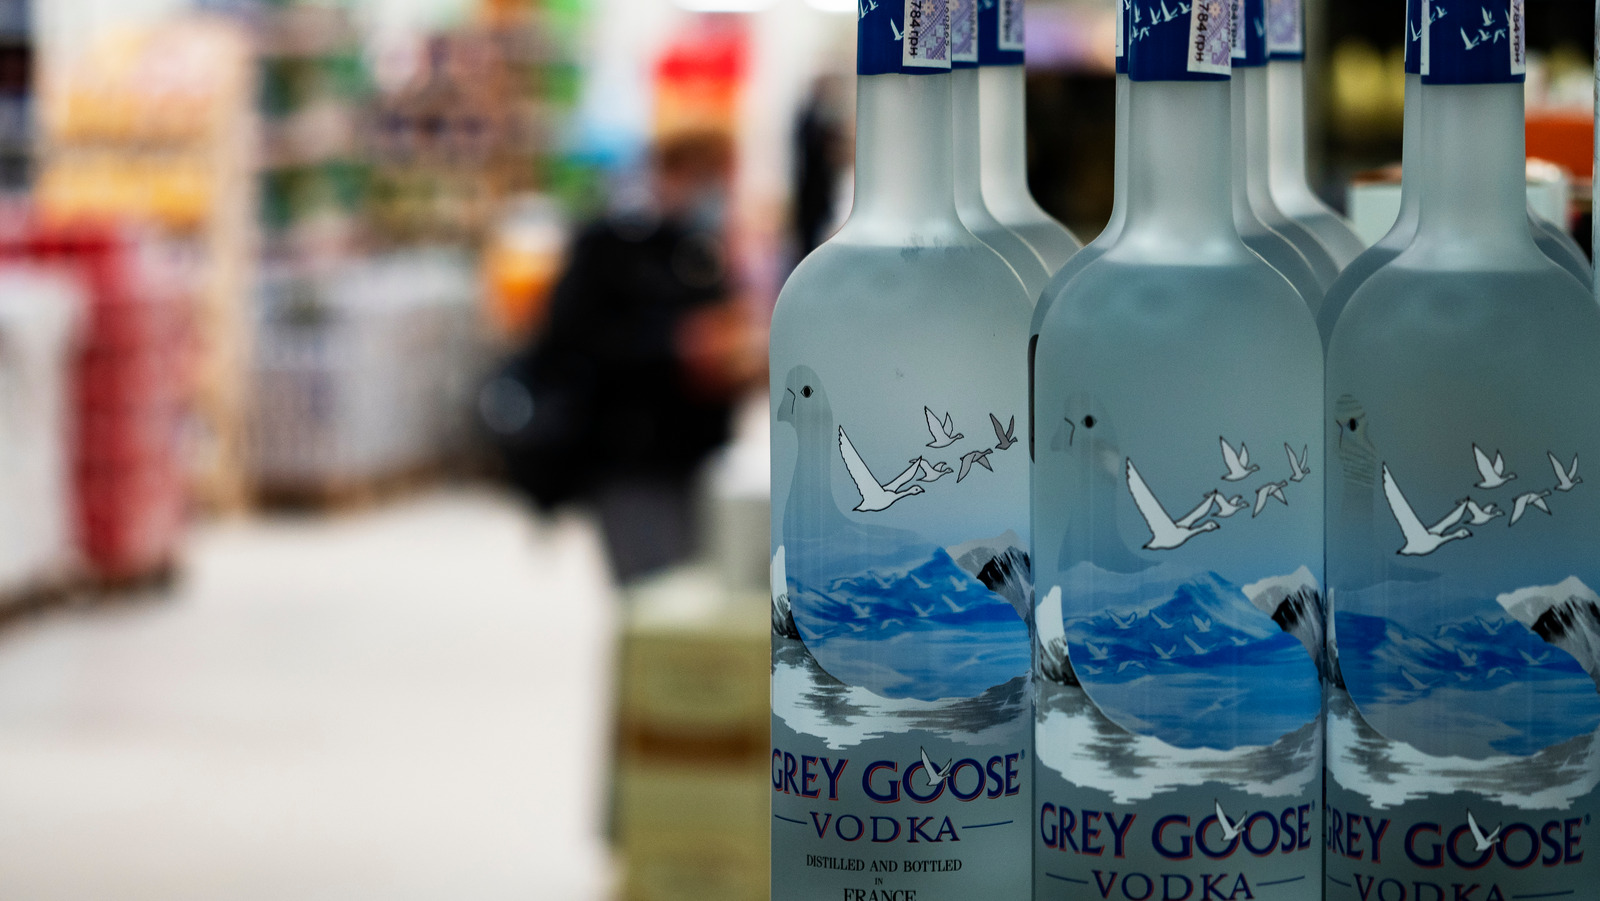 Goose Grey Guide Bottle The Vodka: Ultimate